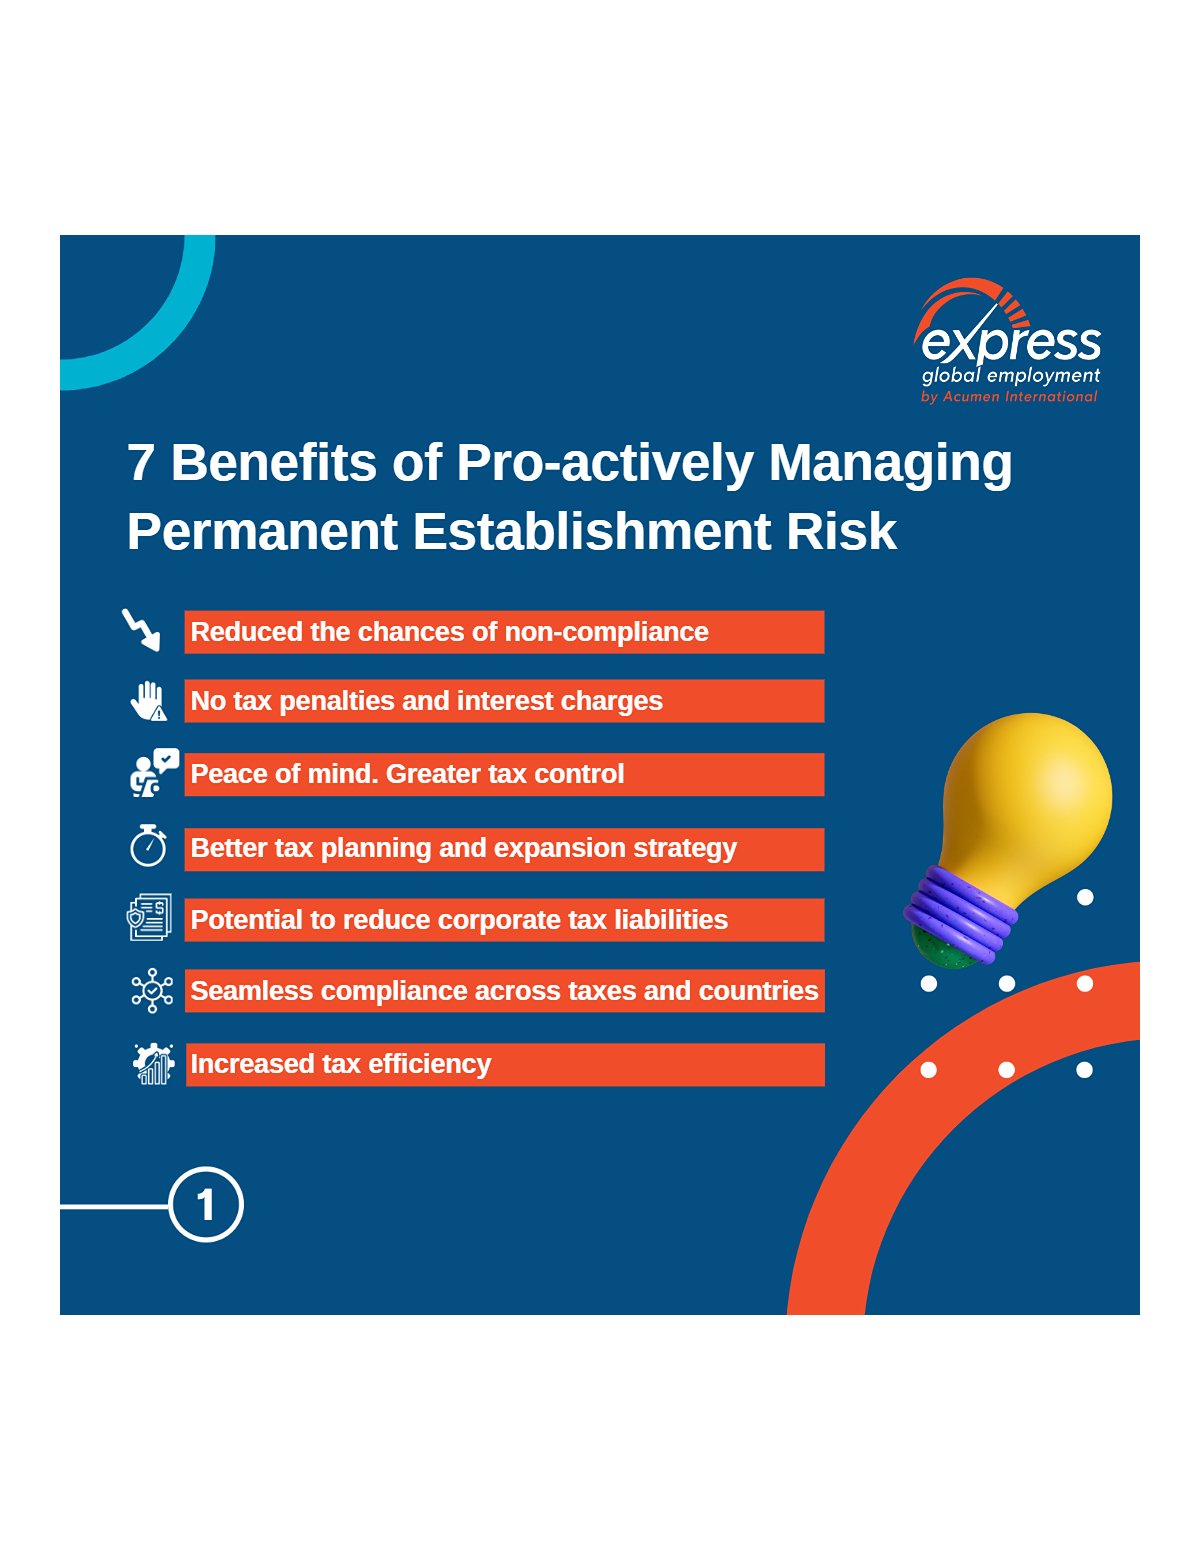 Benefits of Pro-active Permanent Establishment Risk Management